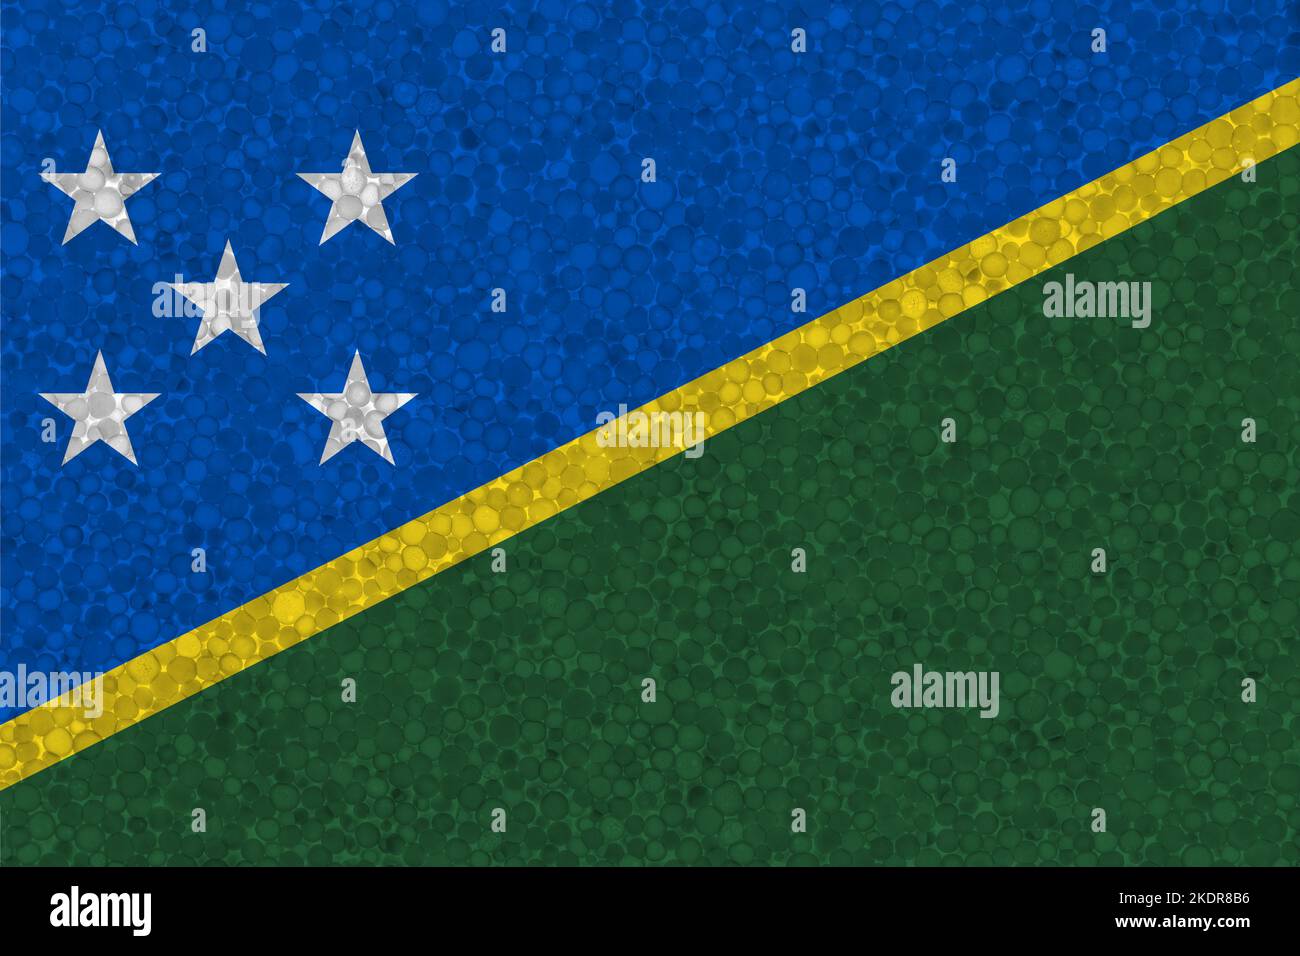 Drapeau des Îles Salomon sur la texture de la styromousse. Drapeau national peint sur la surface de la mousse plastique Banque D'Images